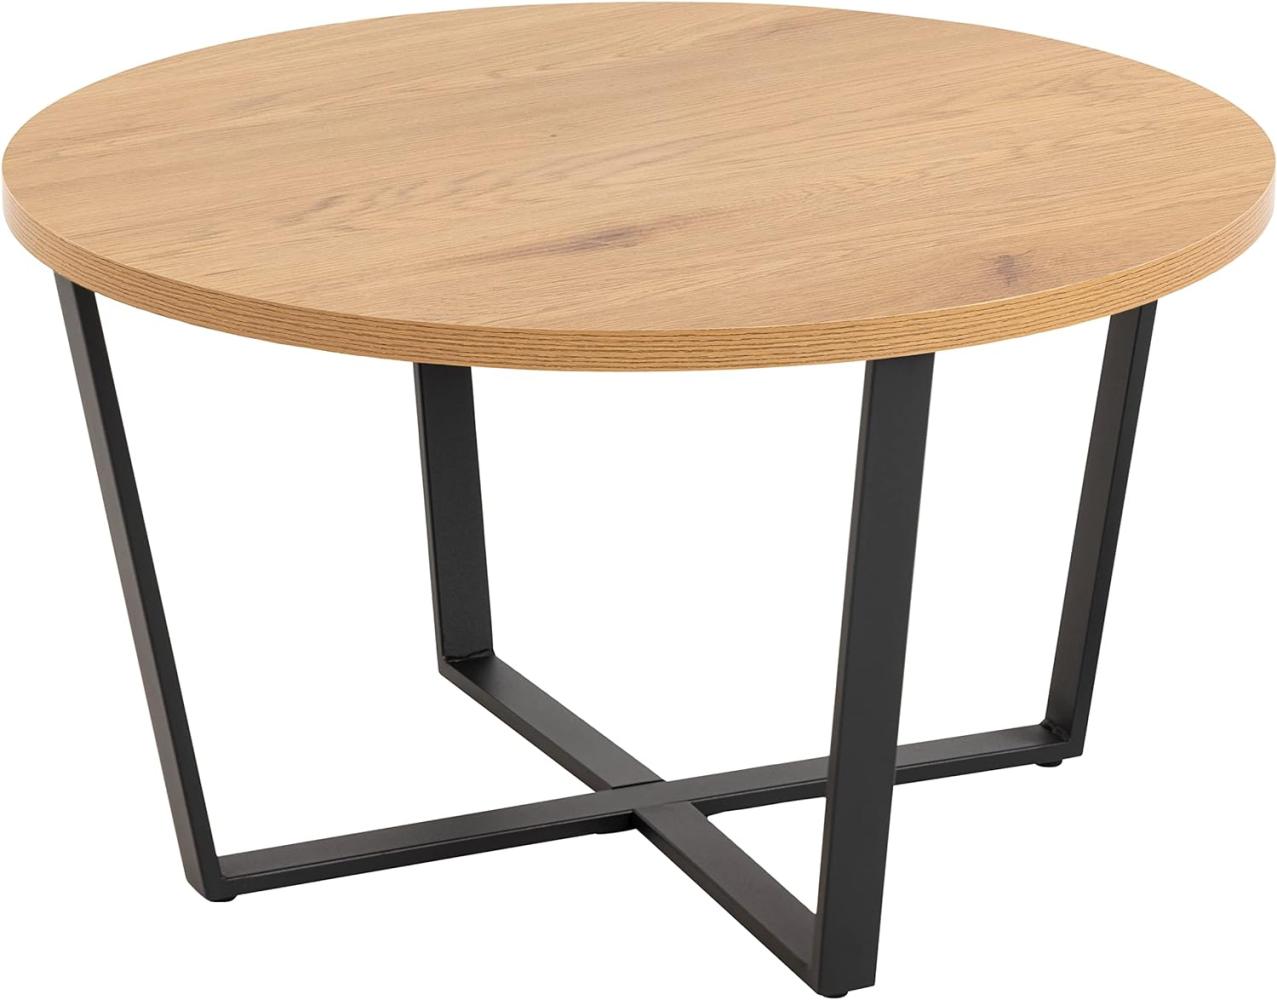 AC Design Furniture Albert runder Holz-Couchtisch, Tischplatte Wildeiche-Optik mit gekreuzten schwarzen Metallbeinen, kleiner Couchtisch, Wohnzimmer-Beistelltisch, minimalistisches Wohnzimmermöbel Bild 1